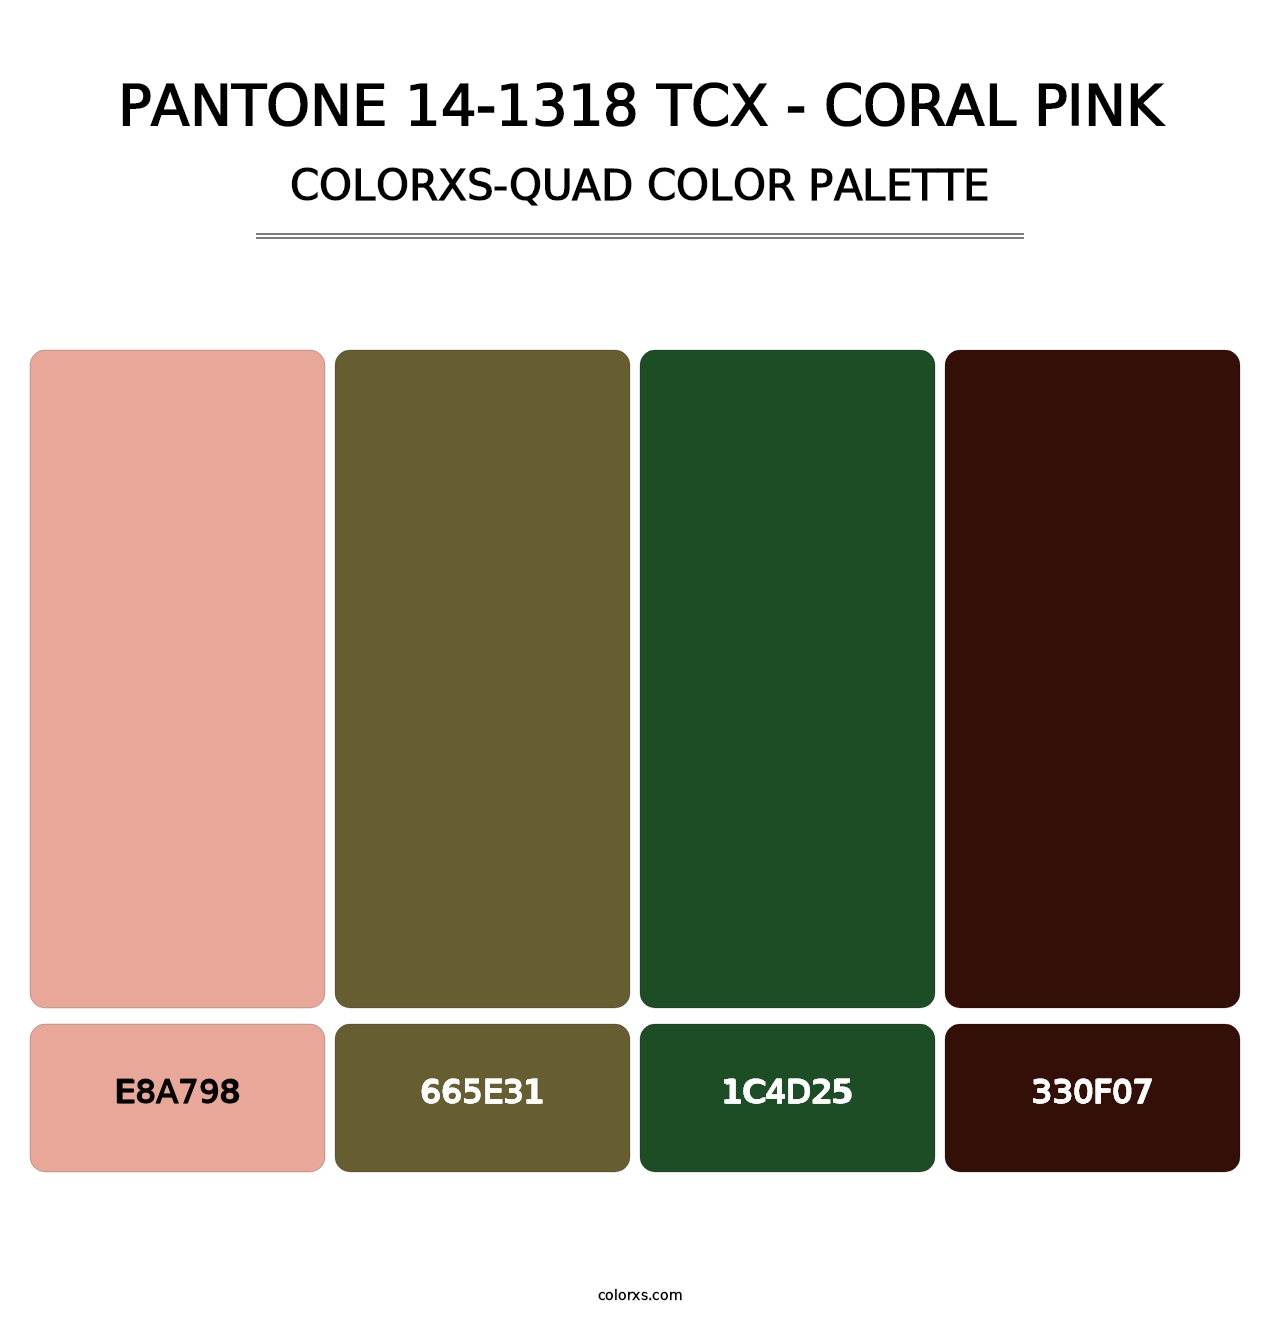 PANTONE 14-1318 TCX - Coral Pink - Colorxs Quad Palette